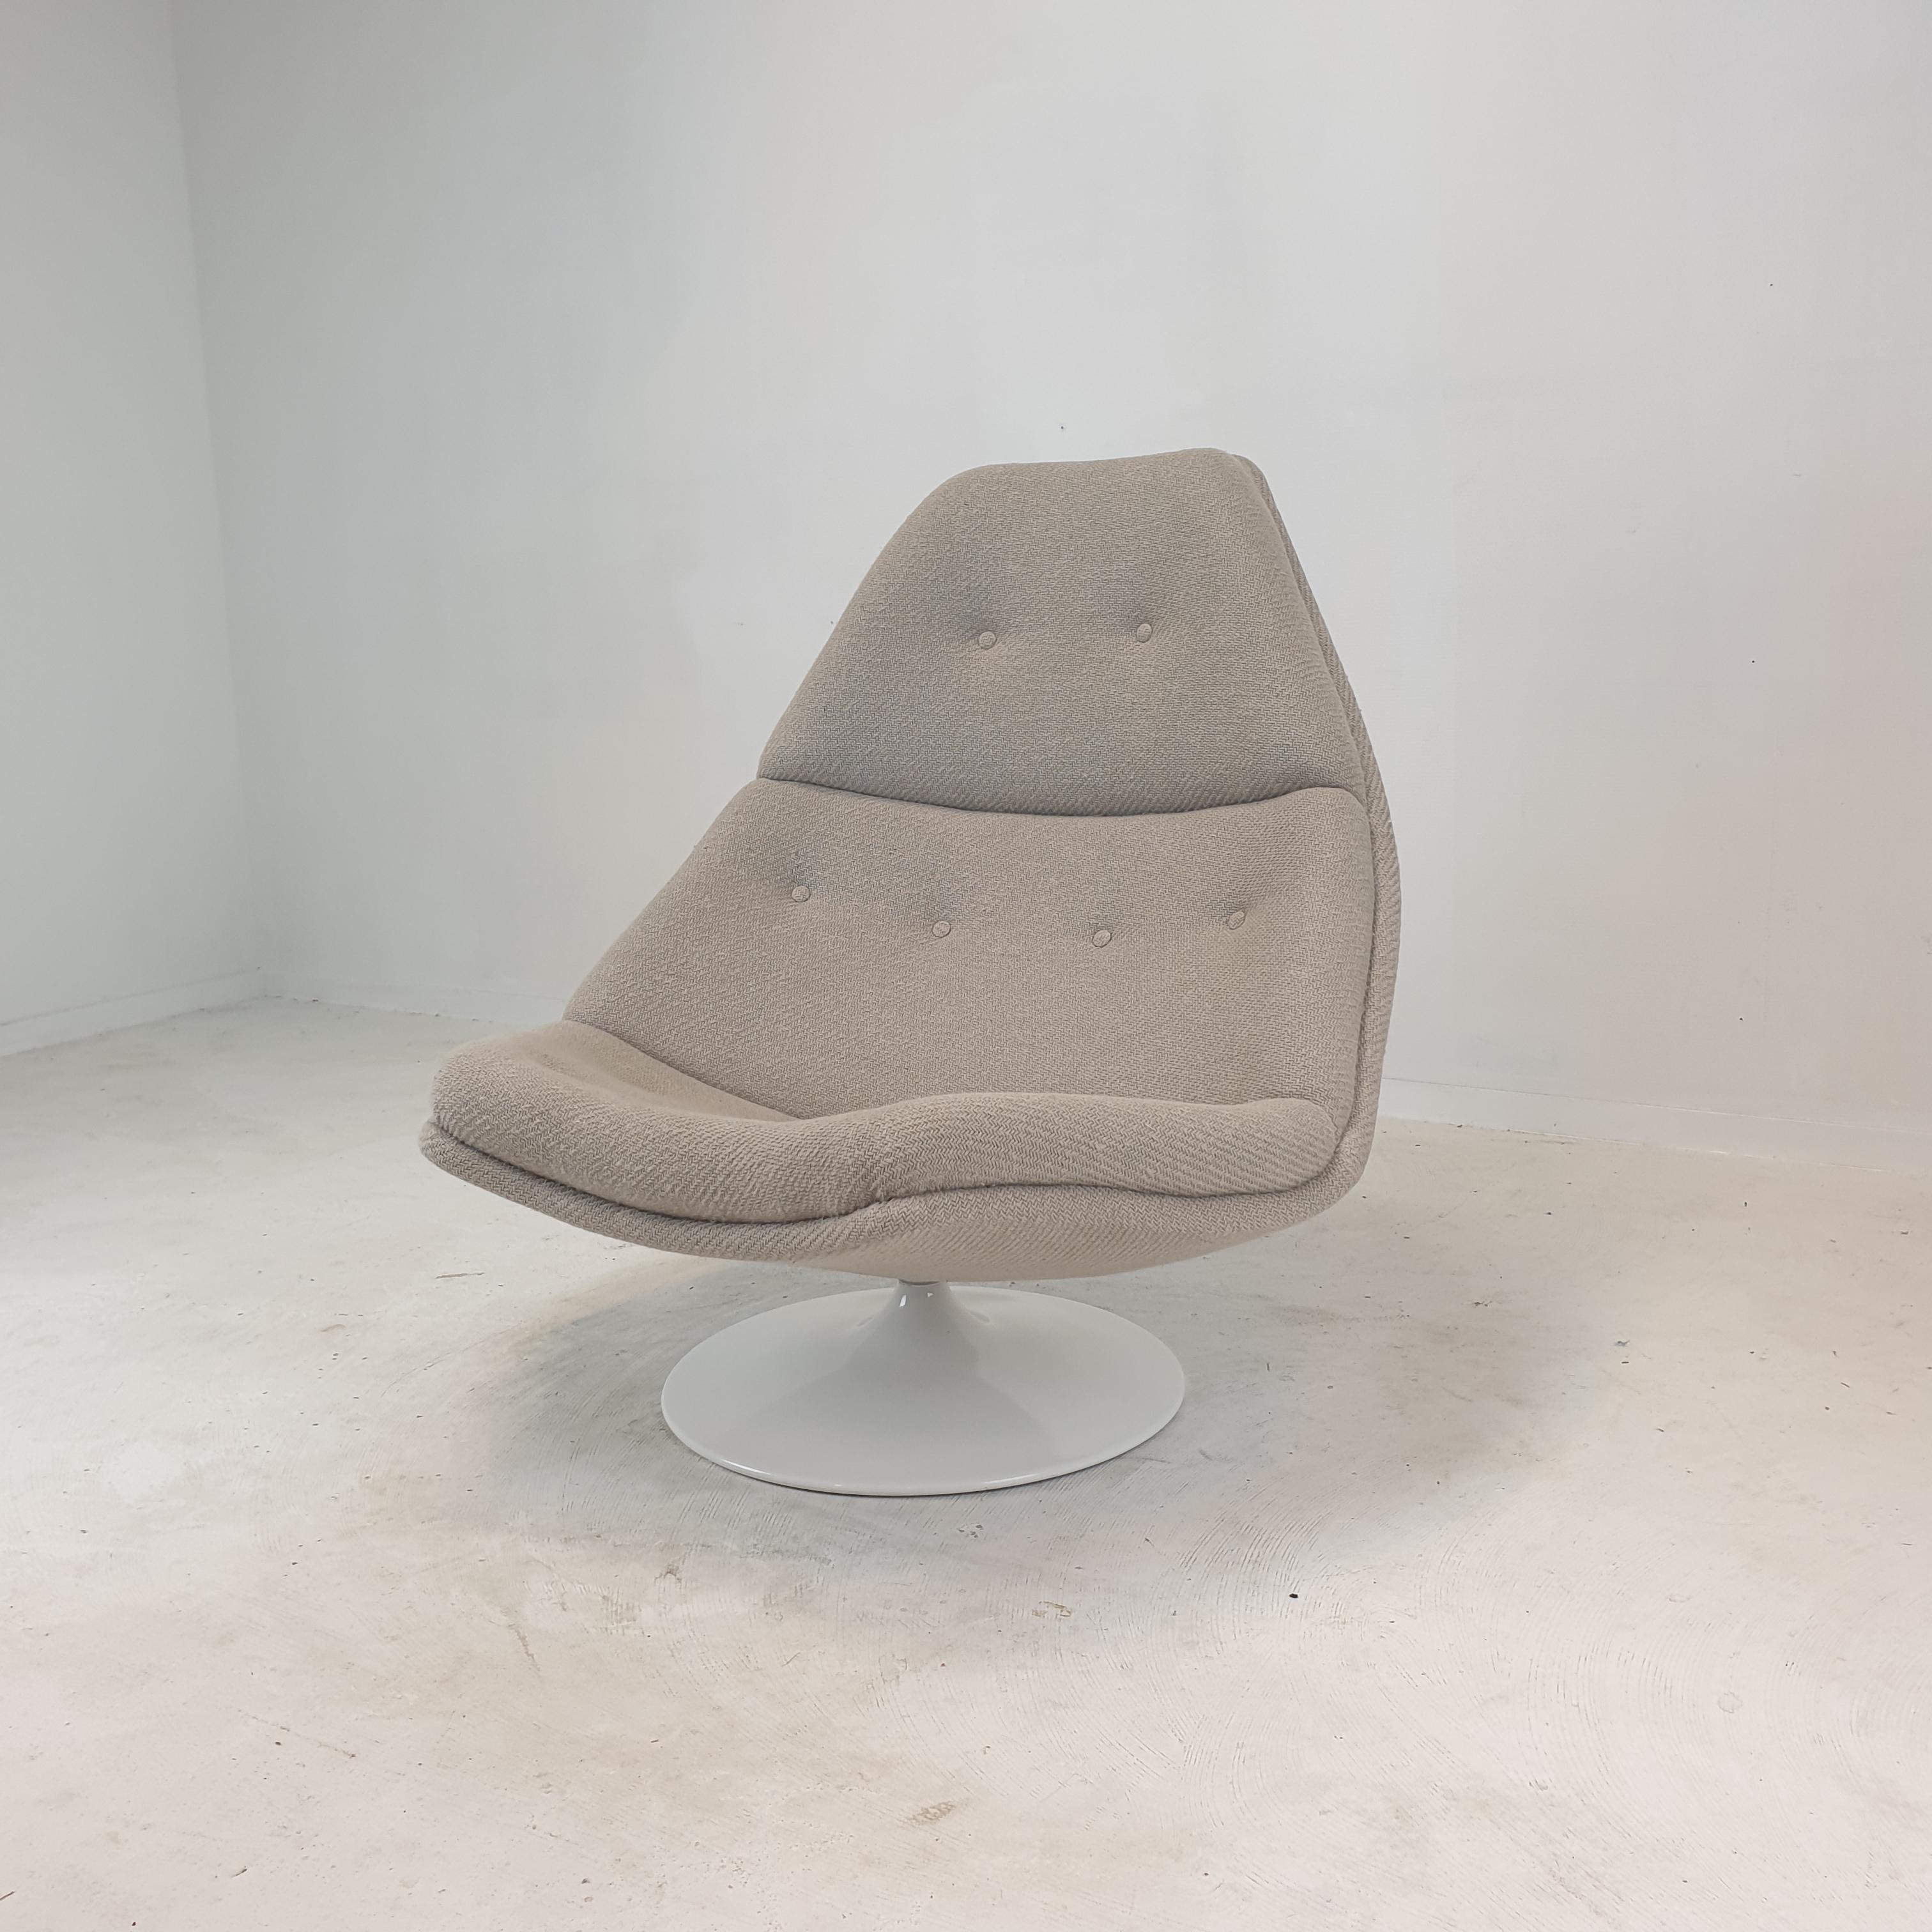 Sehr bequemer Artifort Sessel Modell F510. 
Entworfen von dem berühmten englischen Designer Geoffrey Harcourt in den 60er Jahren. 

Der Stuhl wurde gerade mit neuem Stoff und neuem Schaumstoff restauriert.
Er ist mit einem atemberaubenden, grob